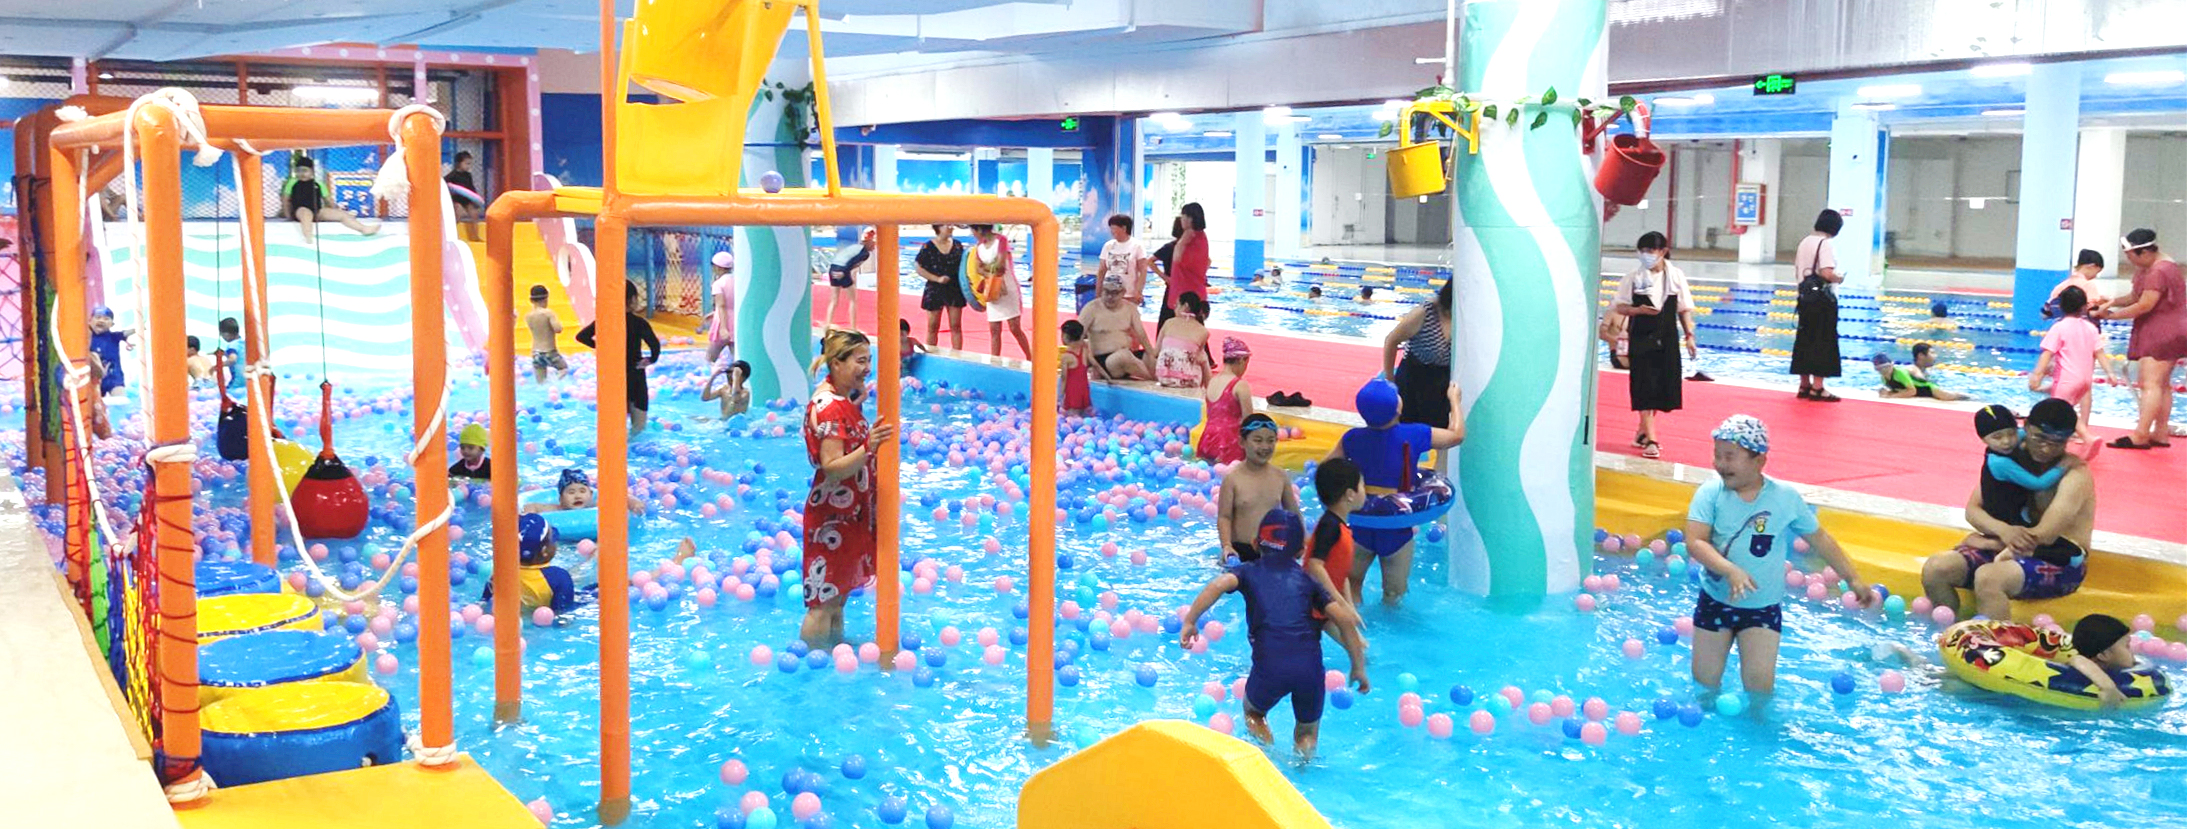 建议儿童水上游乐设施要定期更新